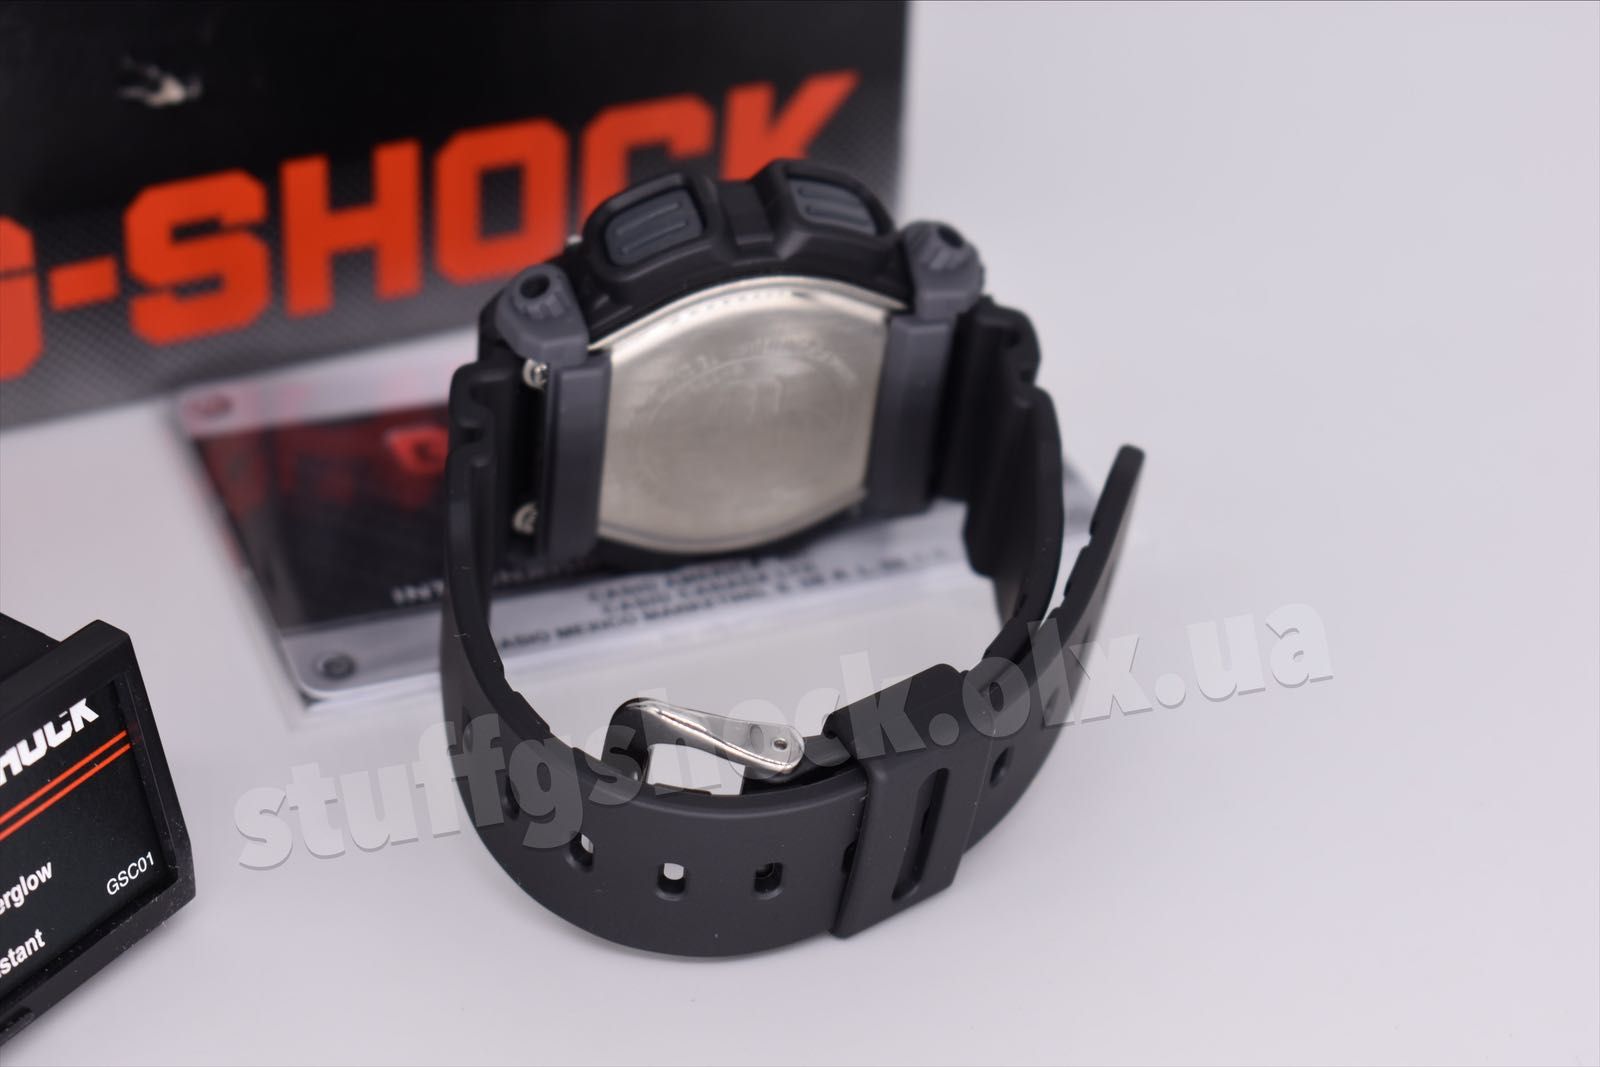 Casio G-Shock DW-9052-1V NEW ORIGINAL!!!